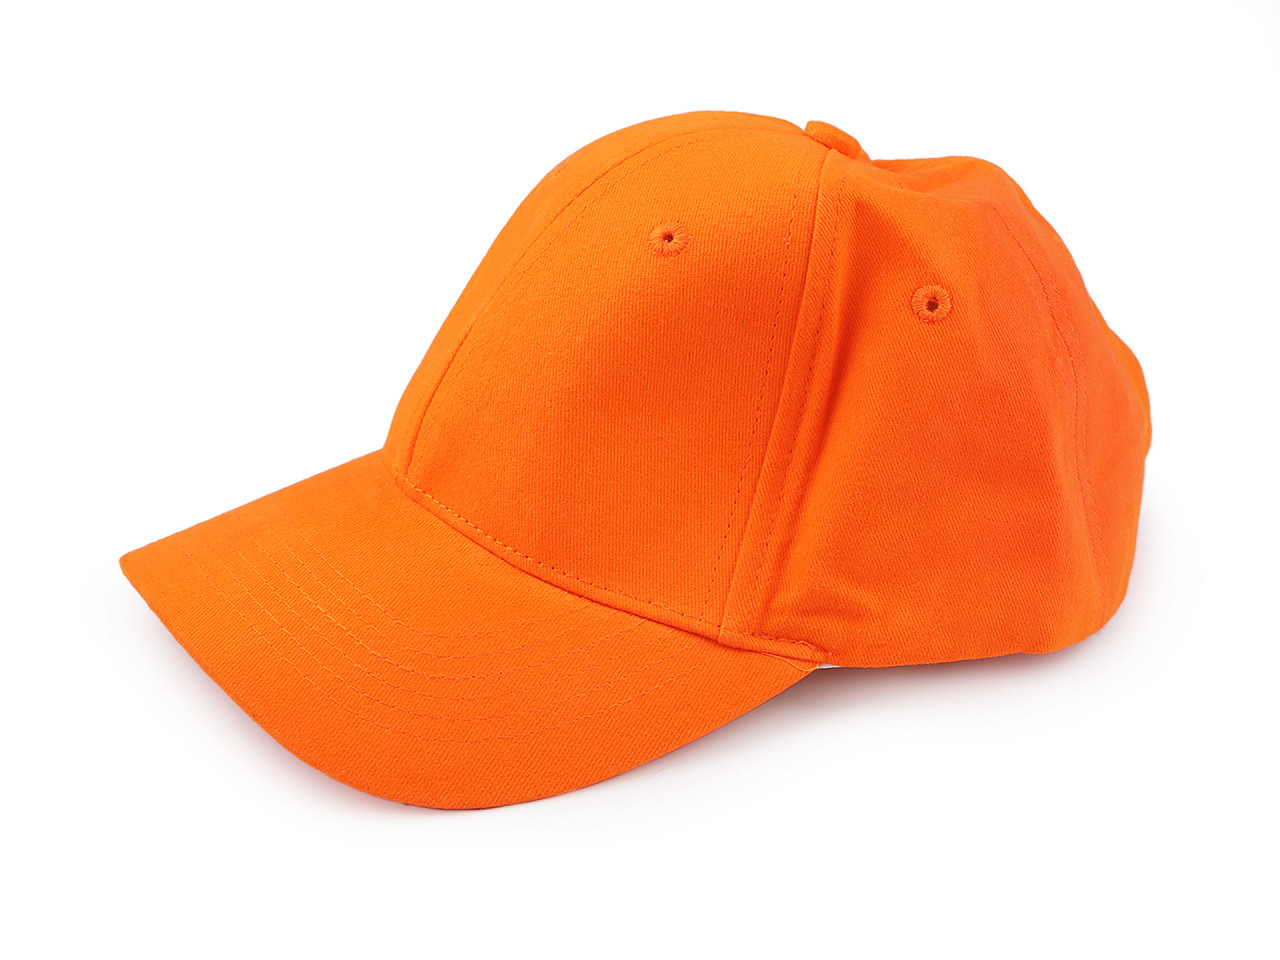 Șapcă unisex din bumbac, potrivită pentru decorare, portocaliu reflectorizant, 1 buc